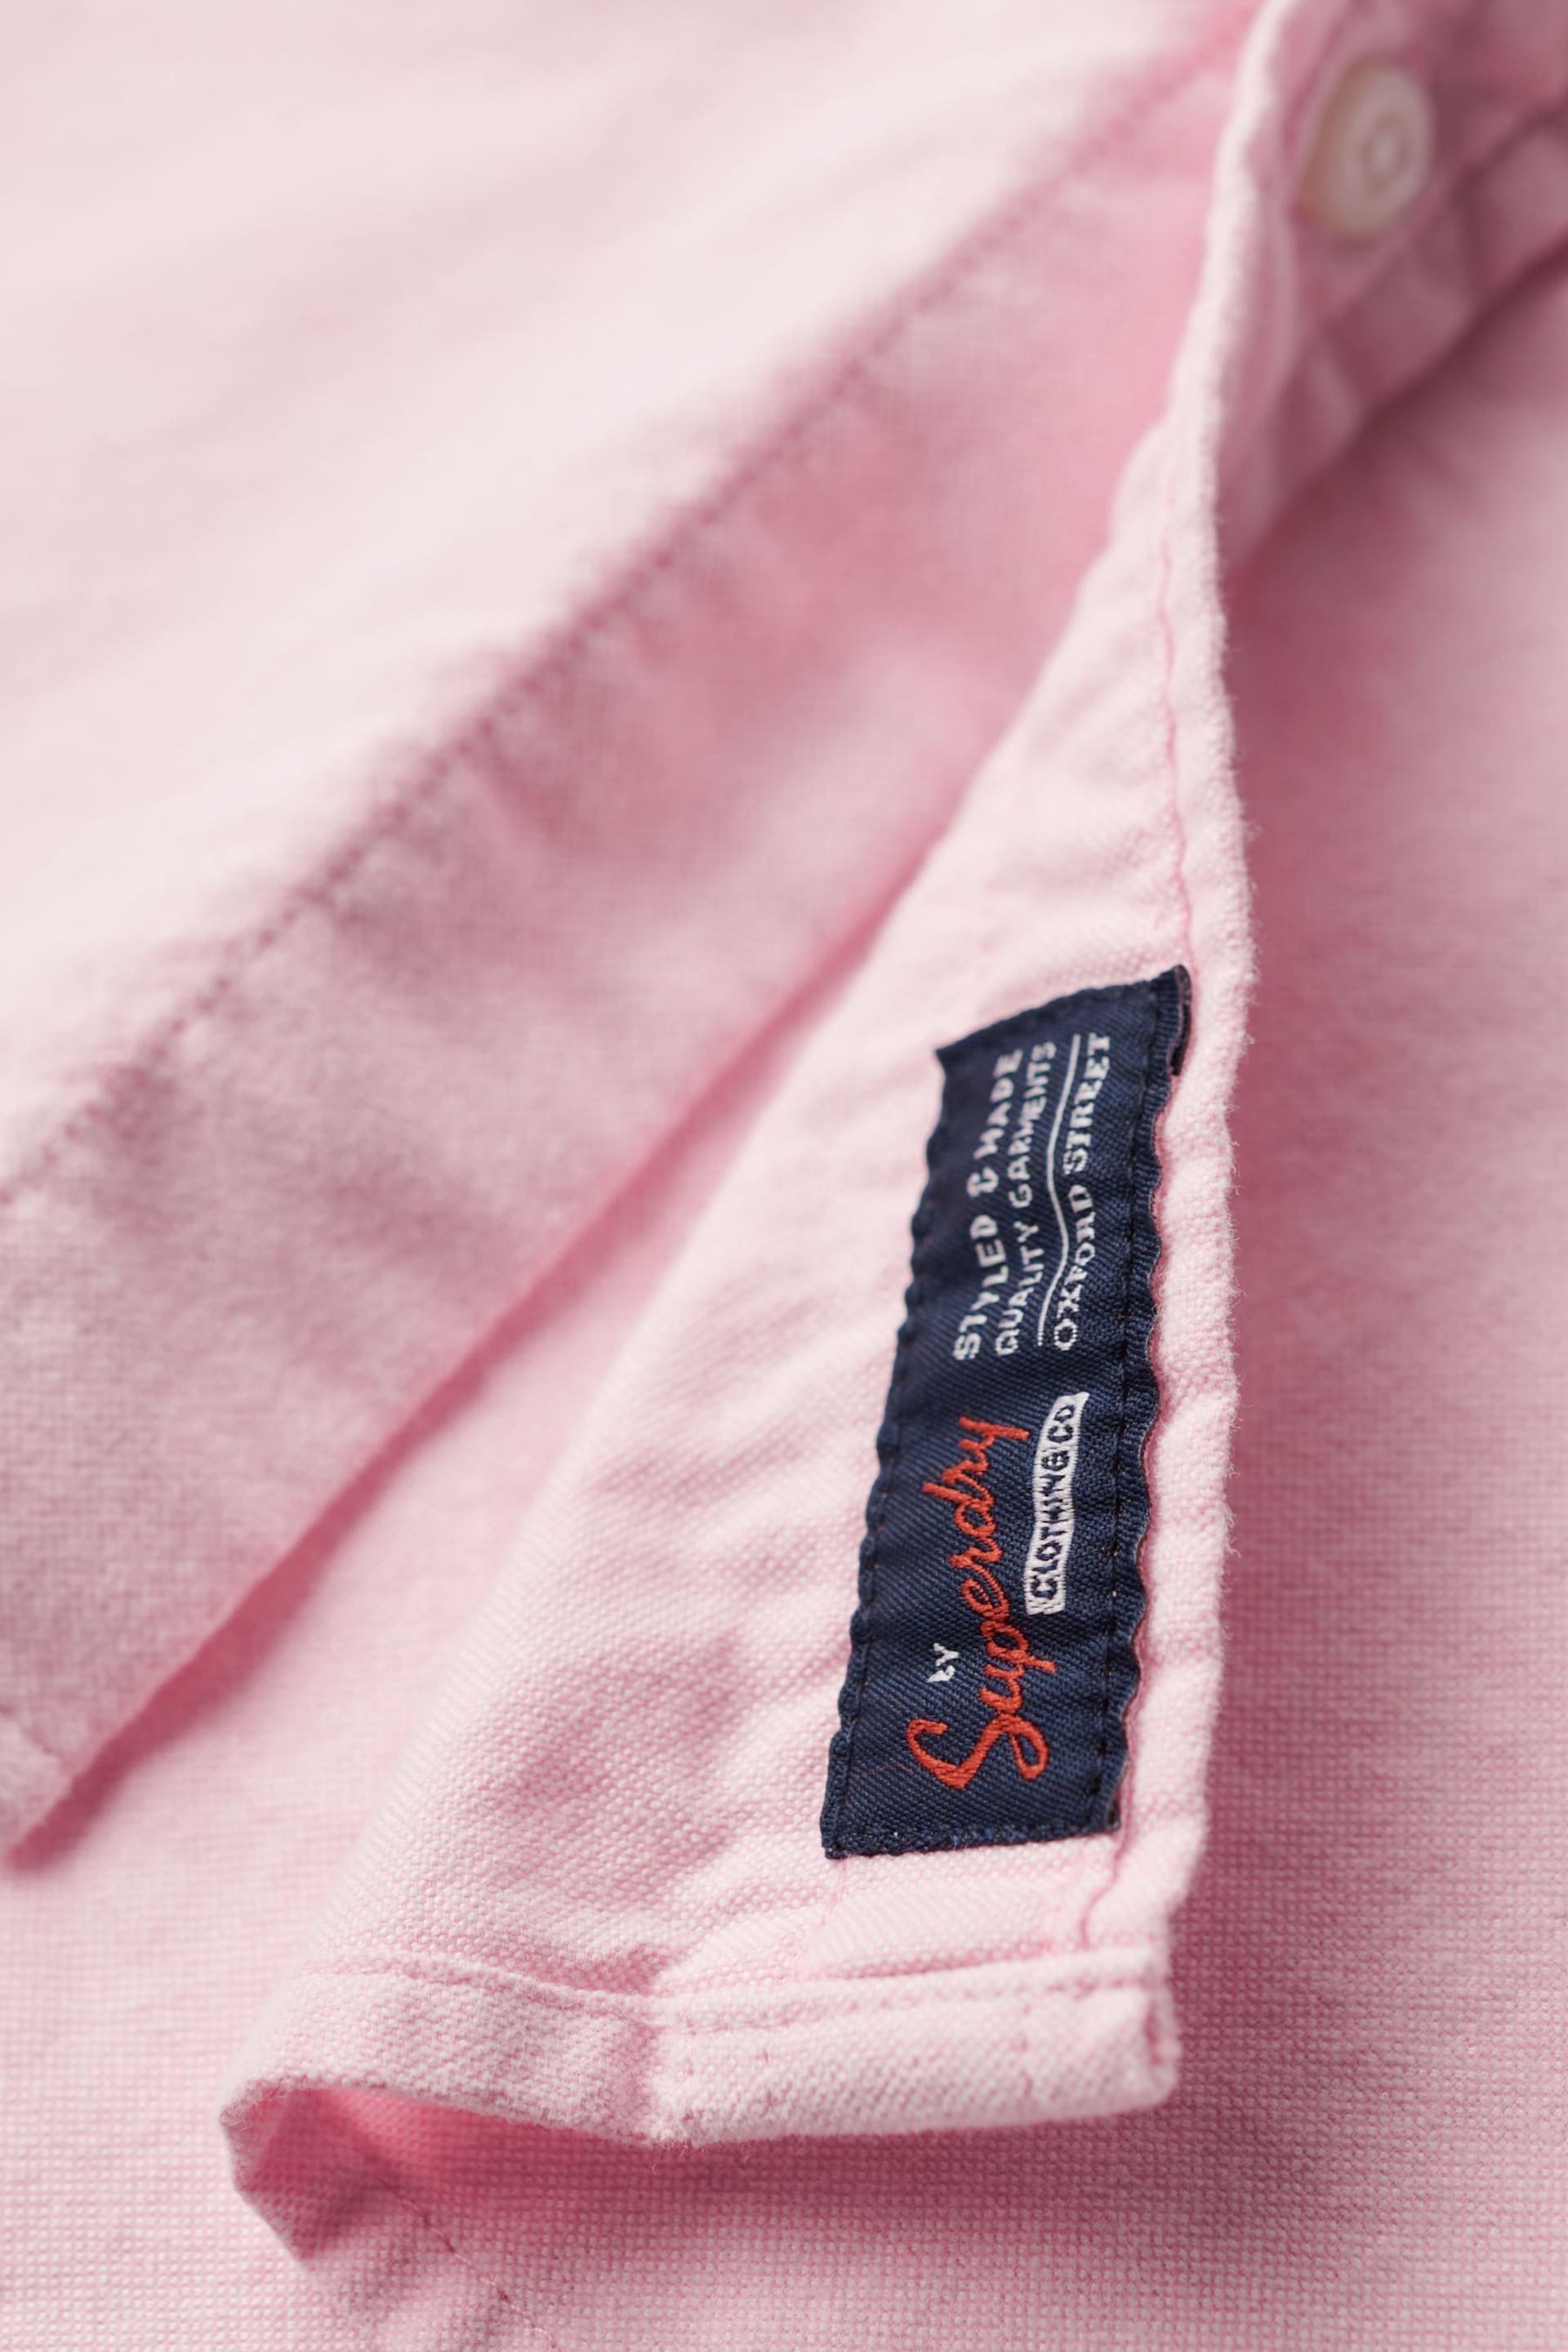 Superdry Pink Vintage Oxford Short Sleeve Shirt - Image 8 of 8